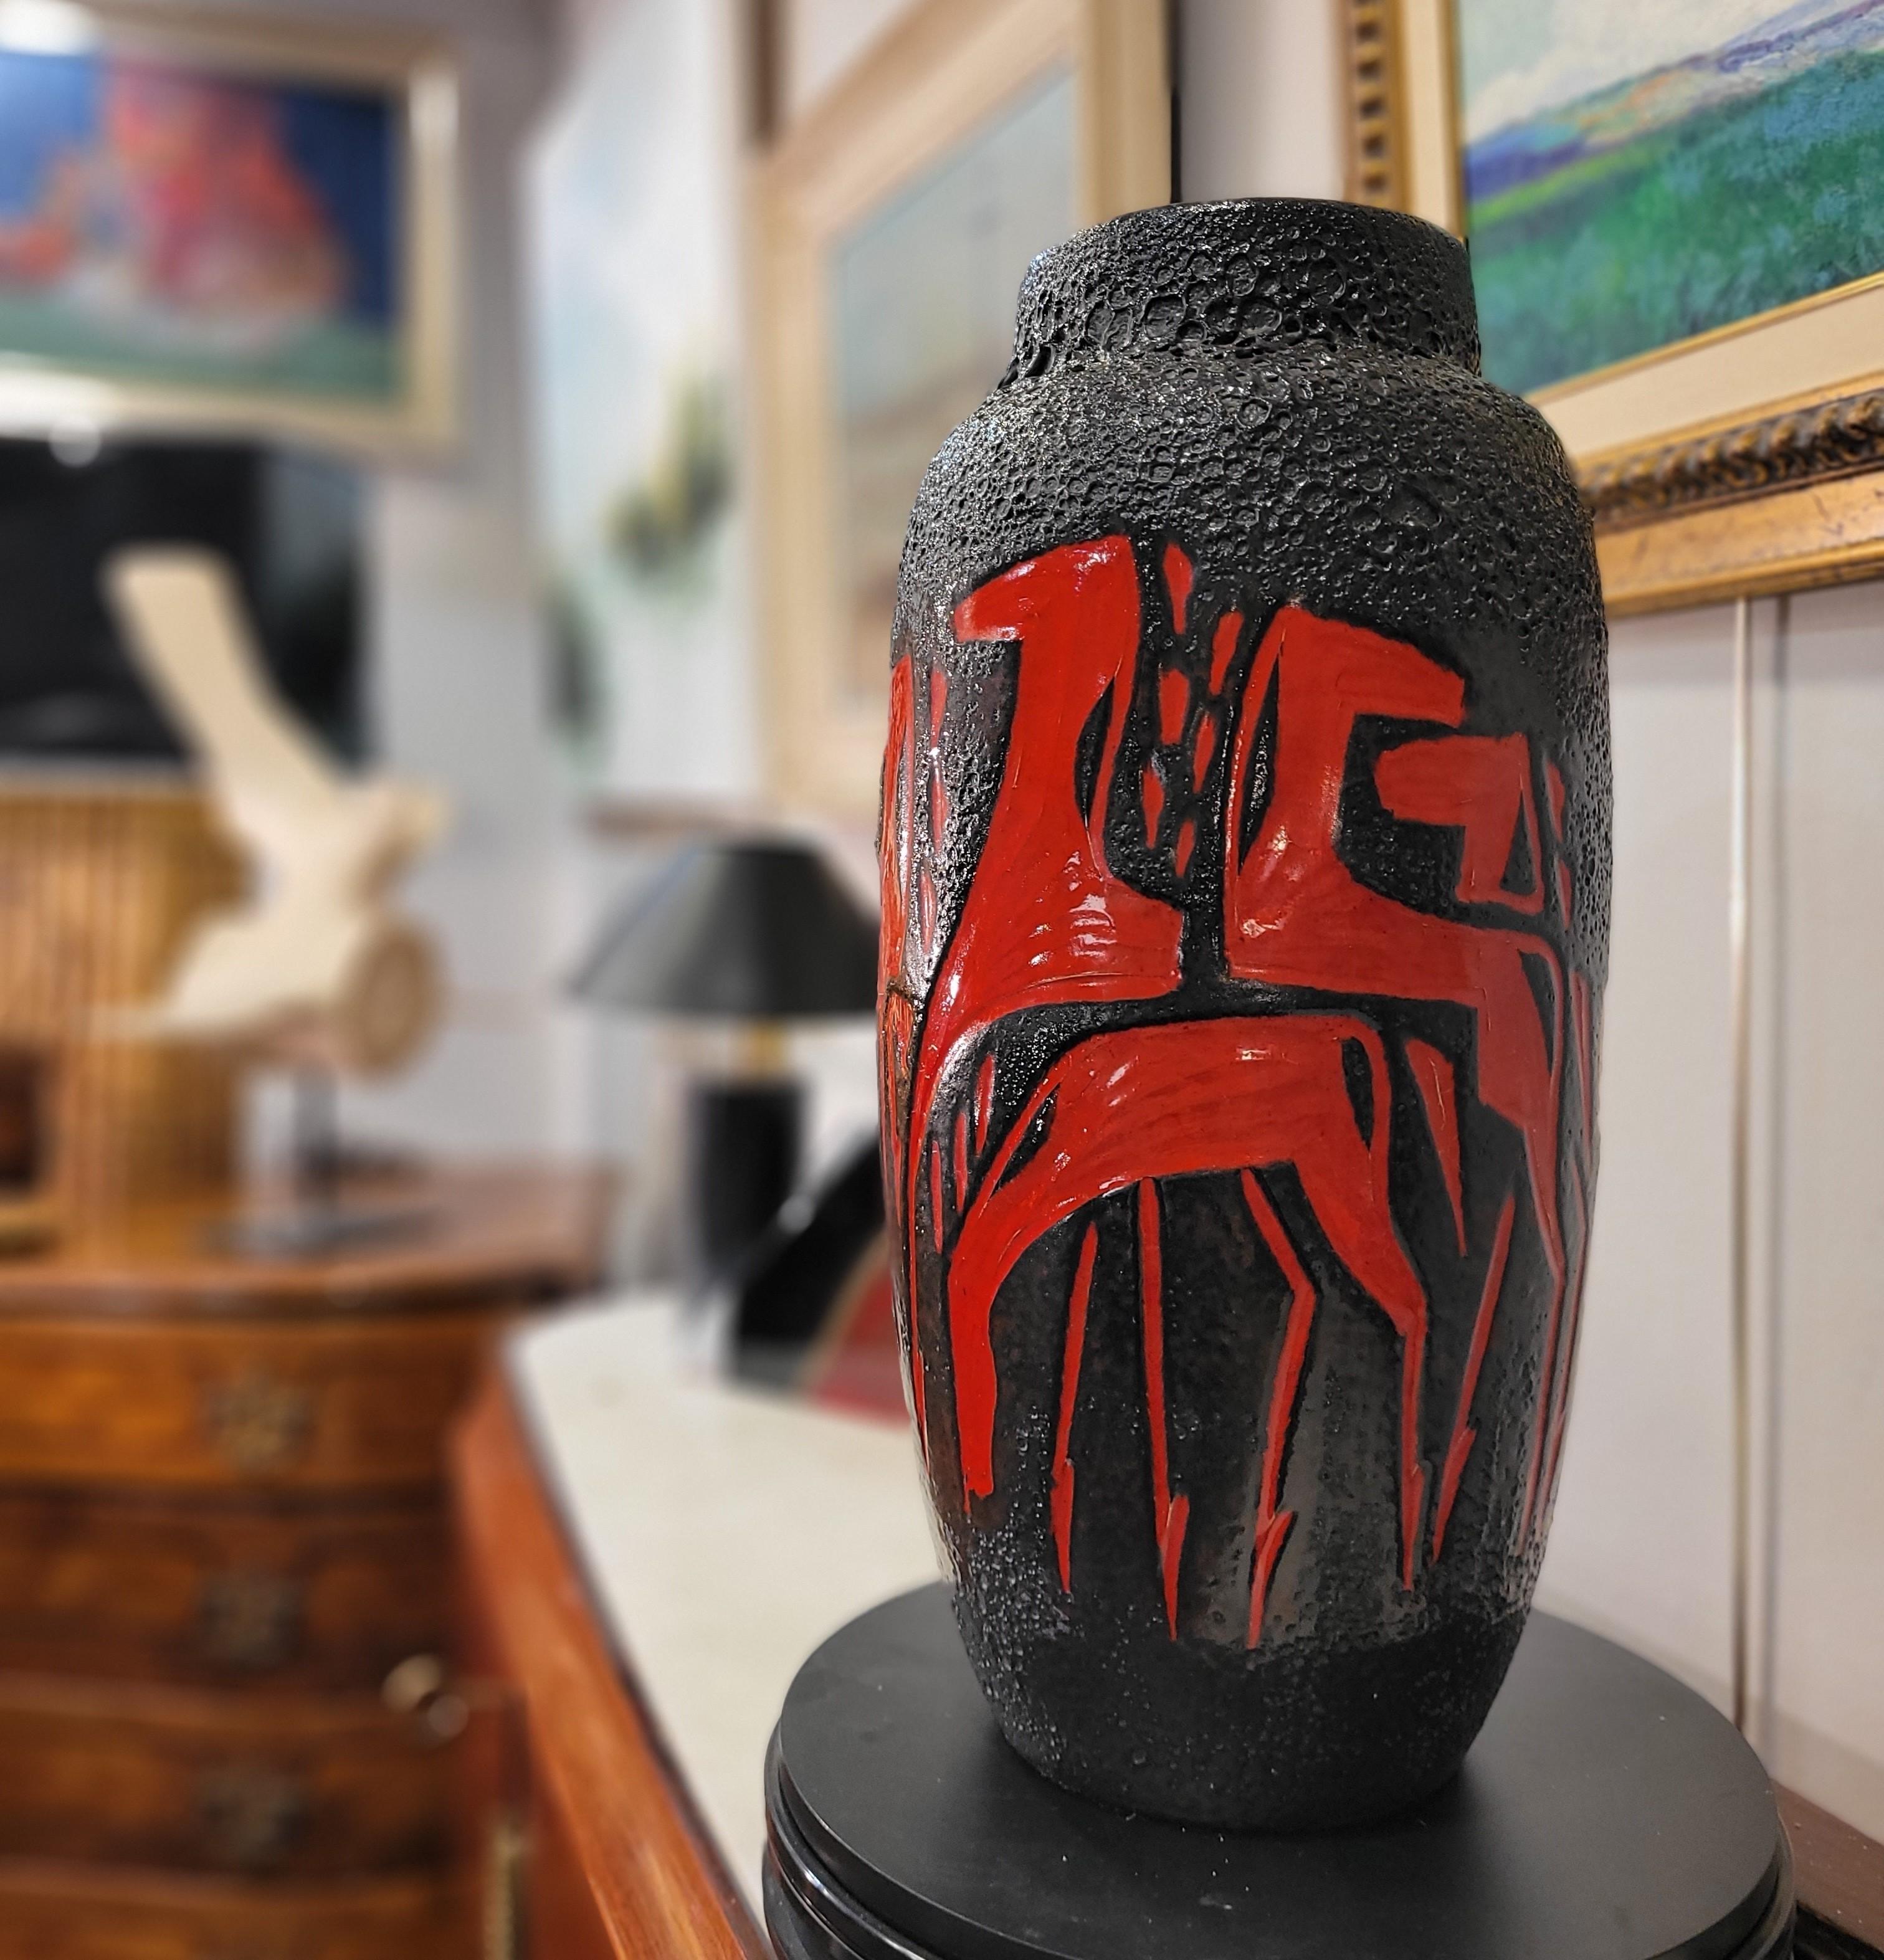 Mid-Century Modern  Lave grasse  rouge noir Allemagne VASE EN CERAMIQUE, Scheurich Keramik, 50's, 60's  en vente